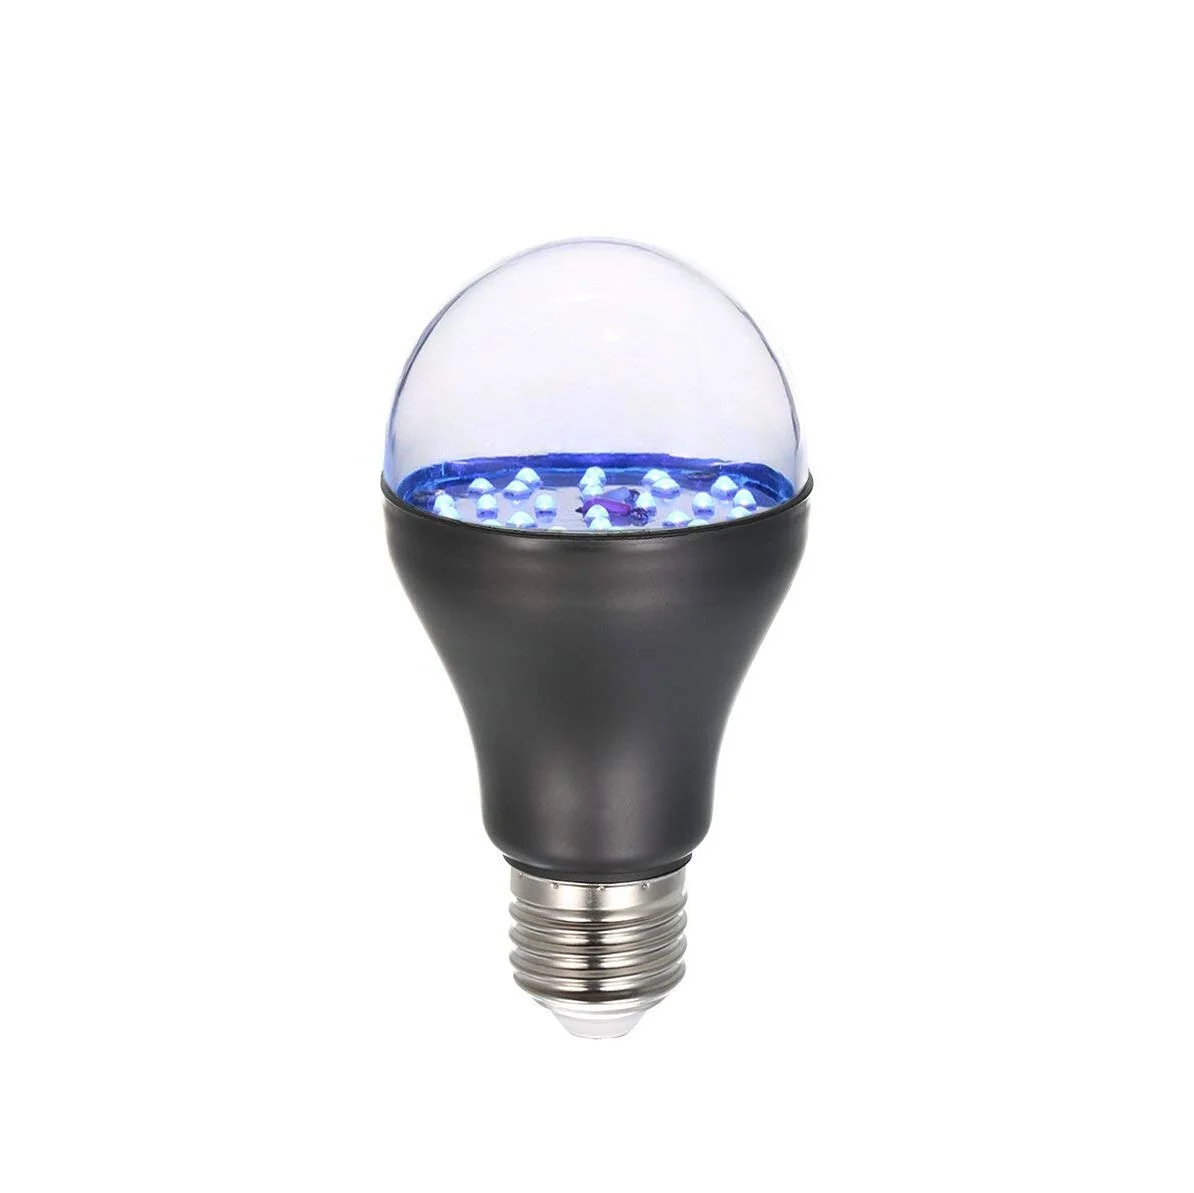 UV LED Bulb in led bulb